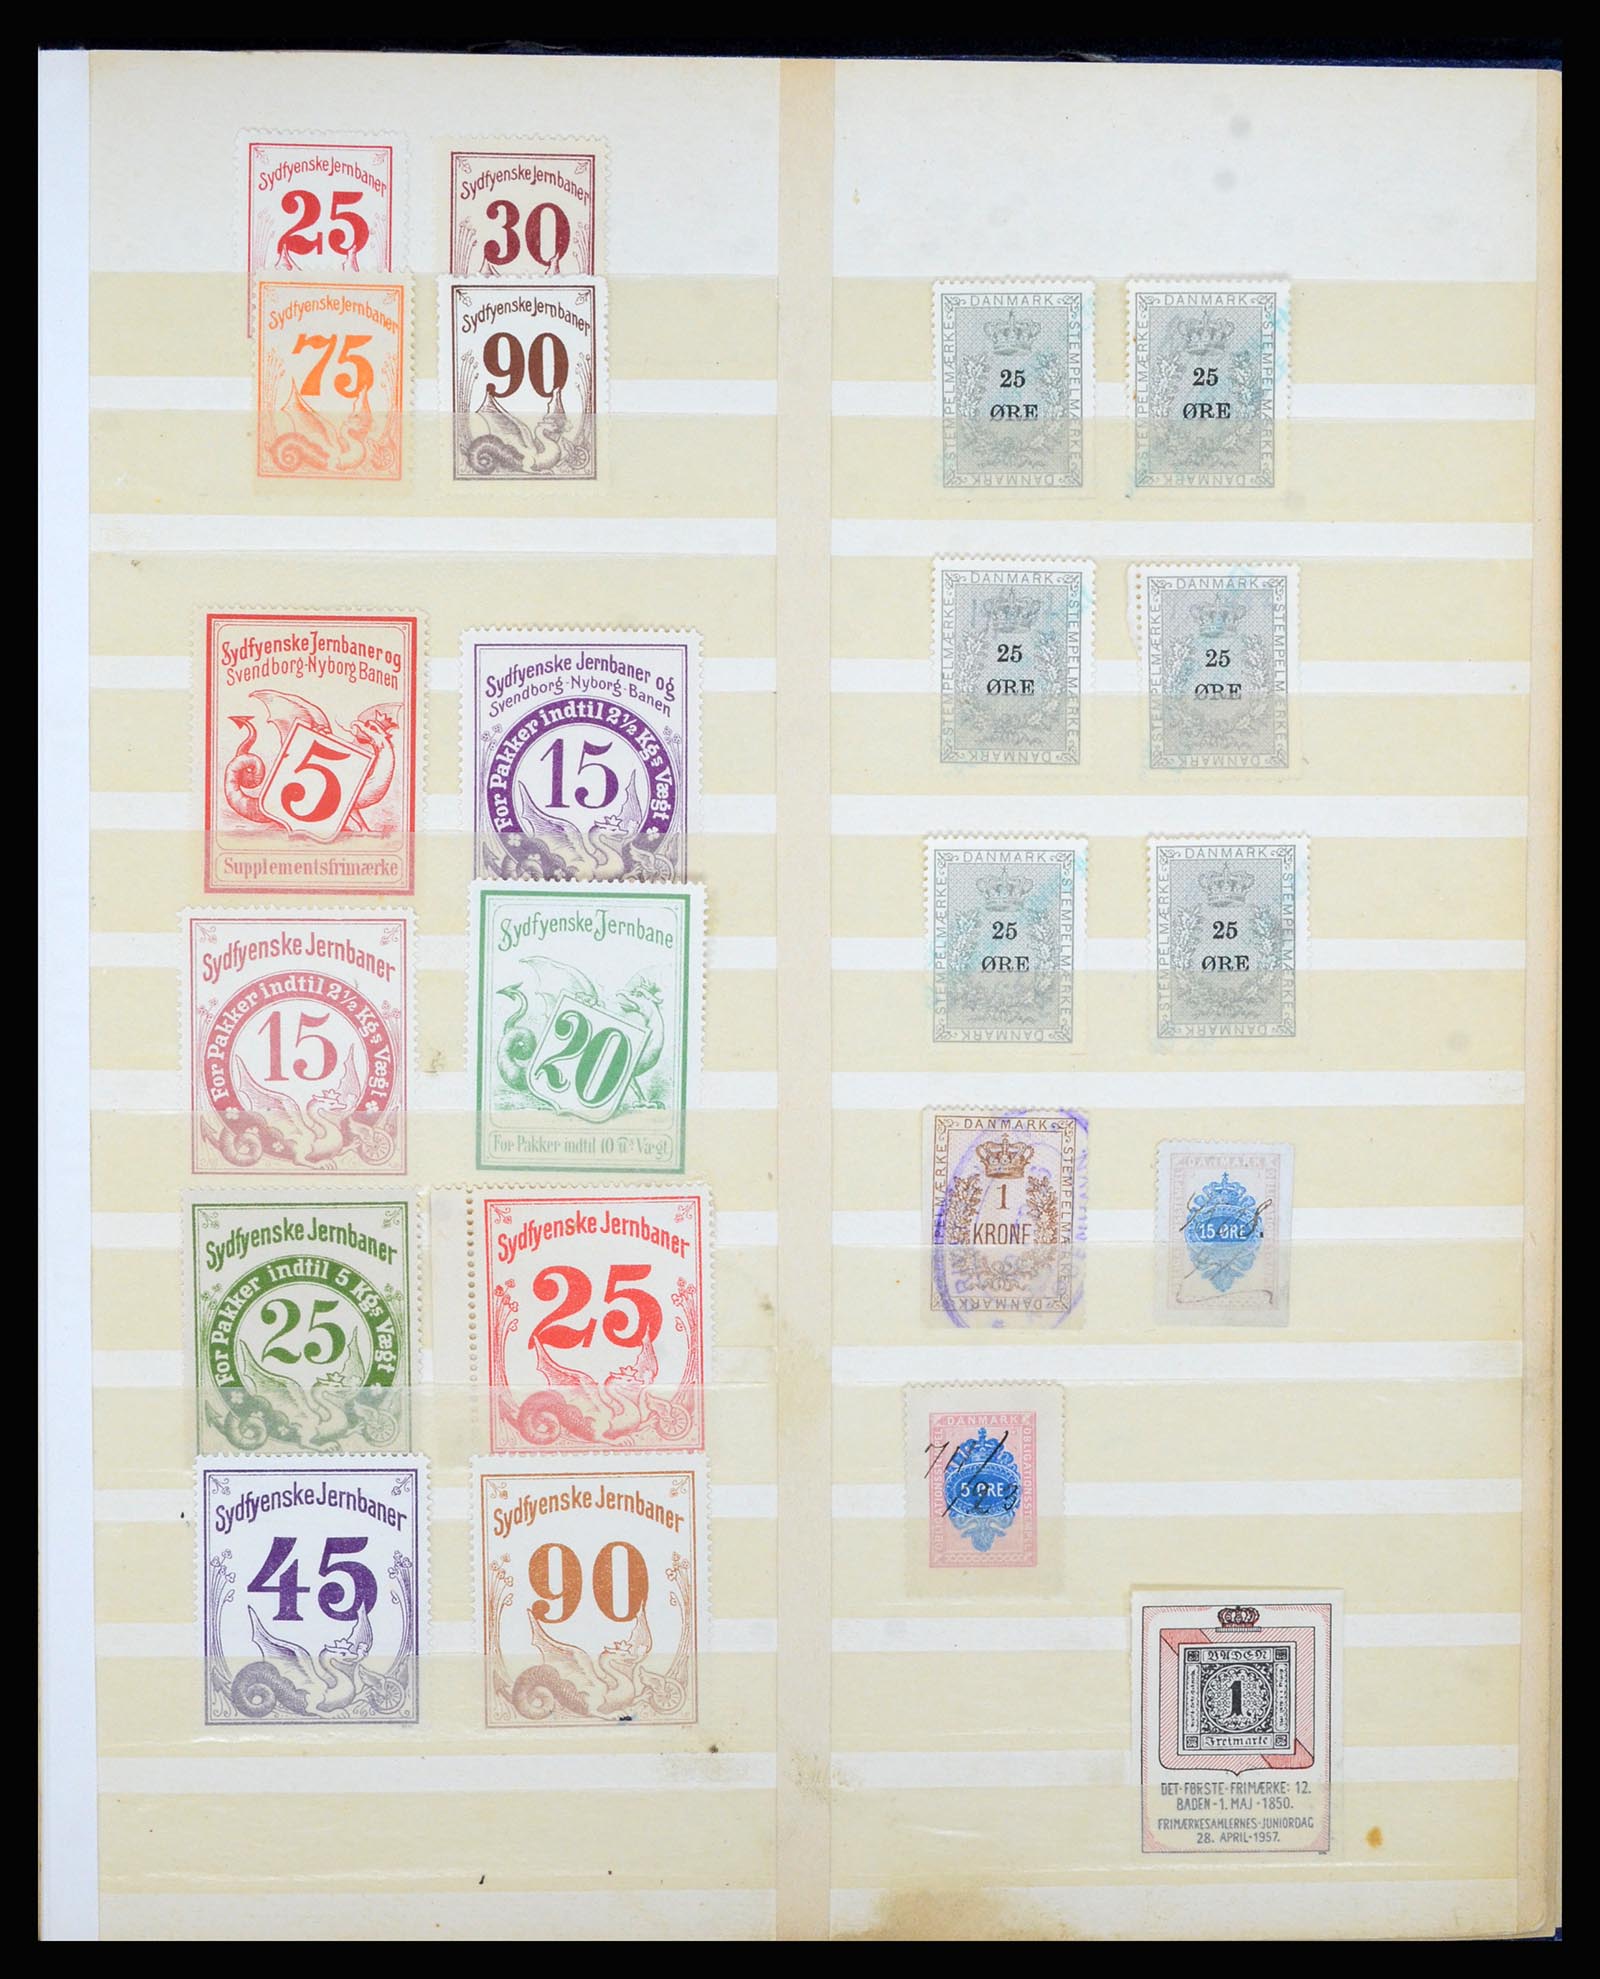 36767 019 - Postzegelverzameling 36767 Denemarken spoorwegzegels.